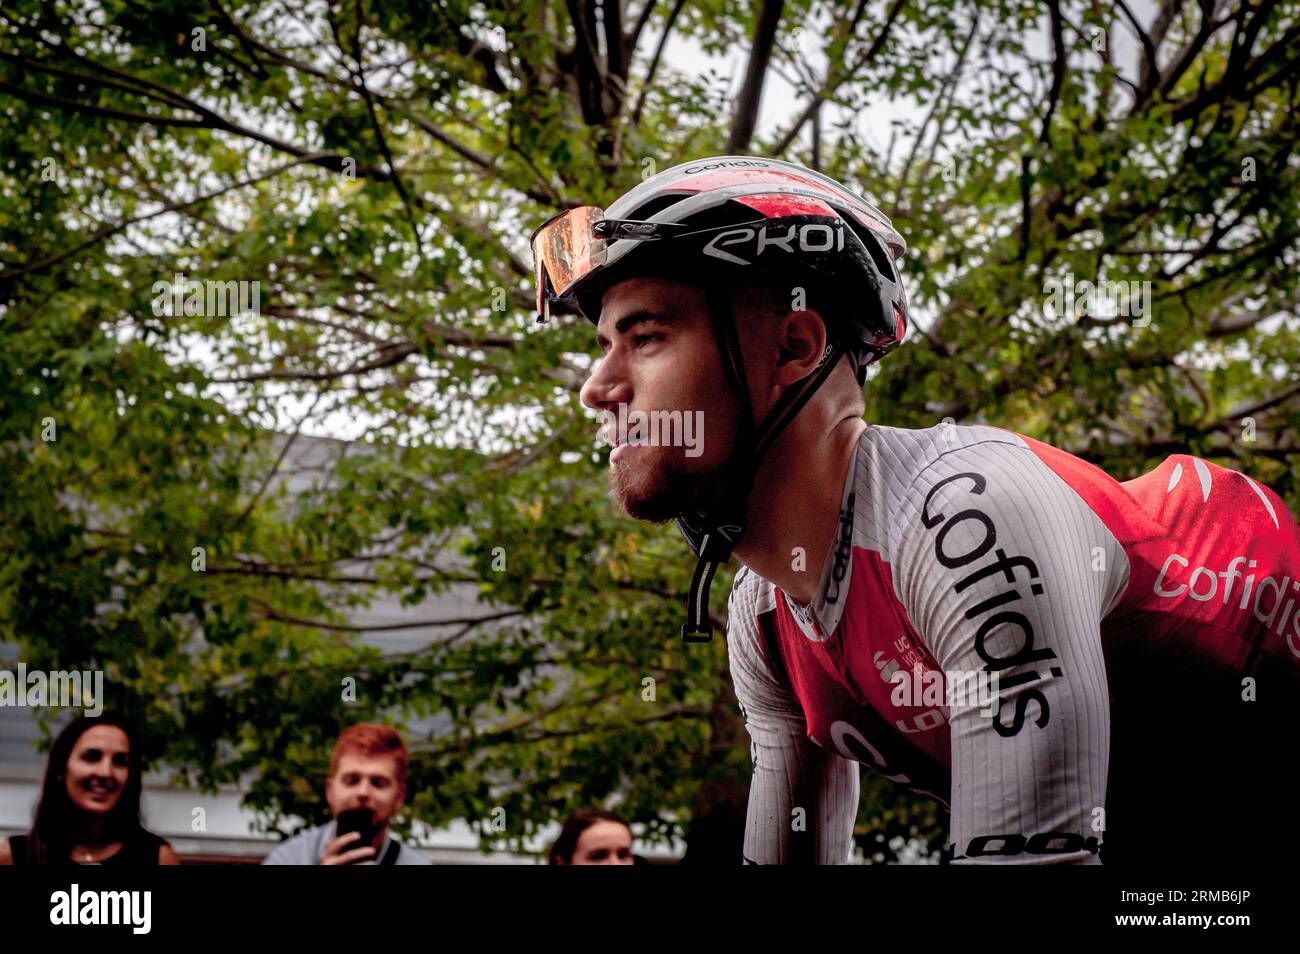 27 agosto 2023, Barcellona, Spagna: Il ciclista del team Cofidis sale la collina di Montjuic a Barcellona durante la seconda tappa de la Vuelta a Espana 2023. Credito: Jordi Boixareu/Alamy Live News Foto Stock